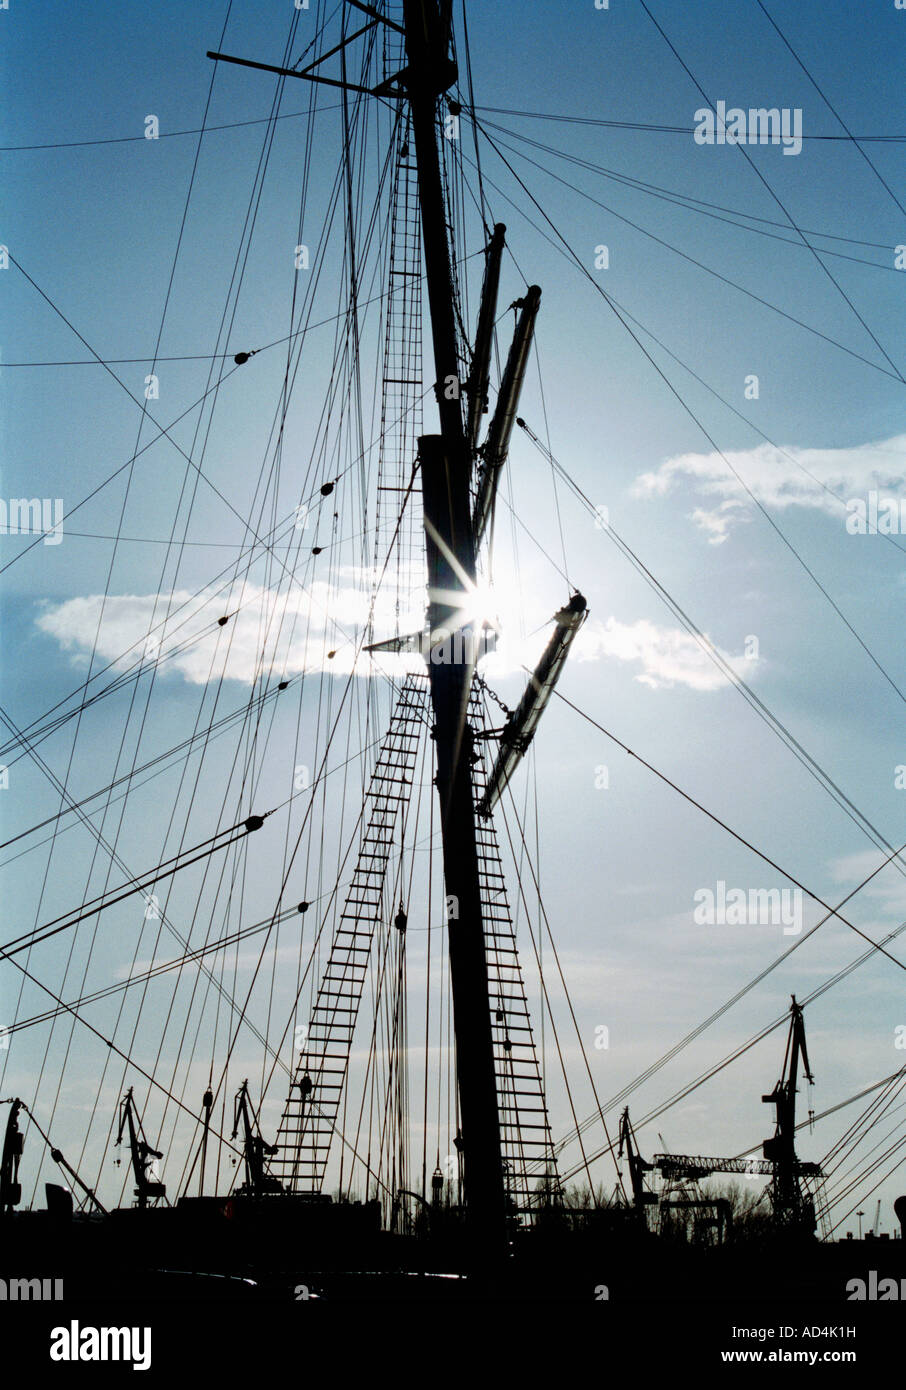 Le mât et le gréement du navire en silhouette Banque D'Images